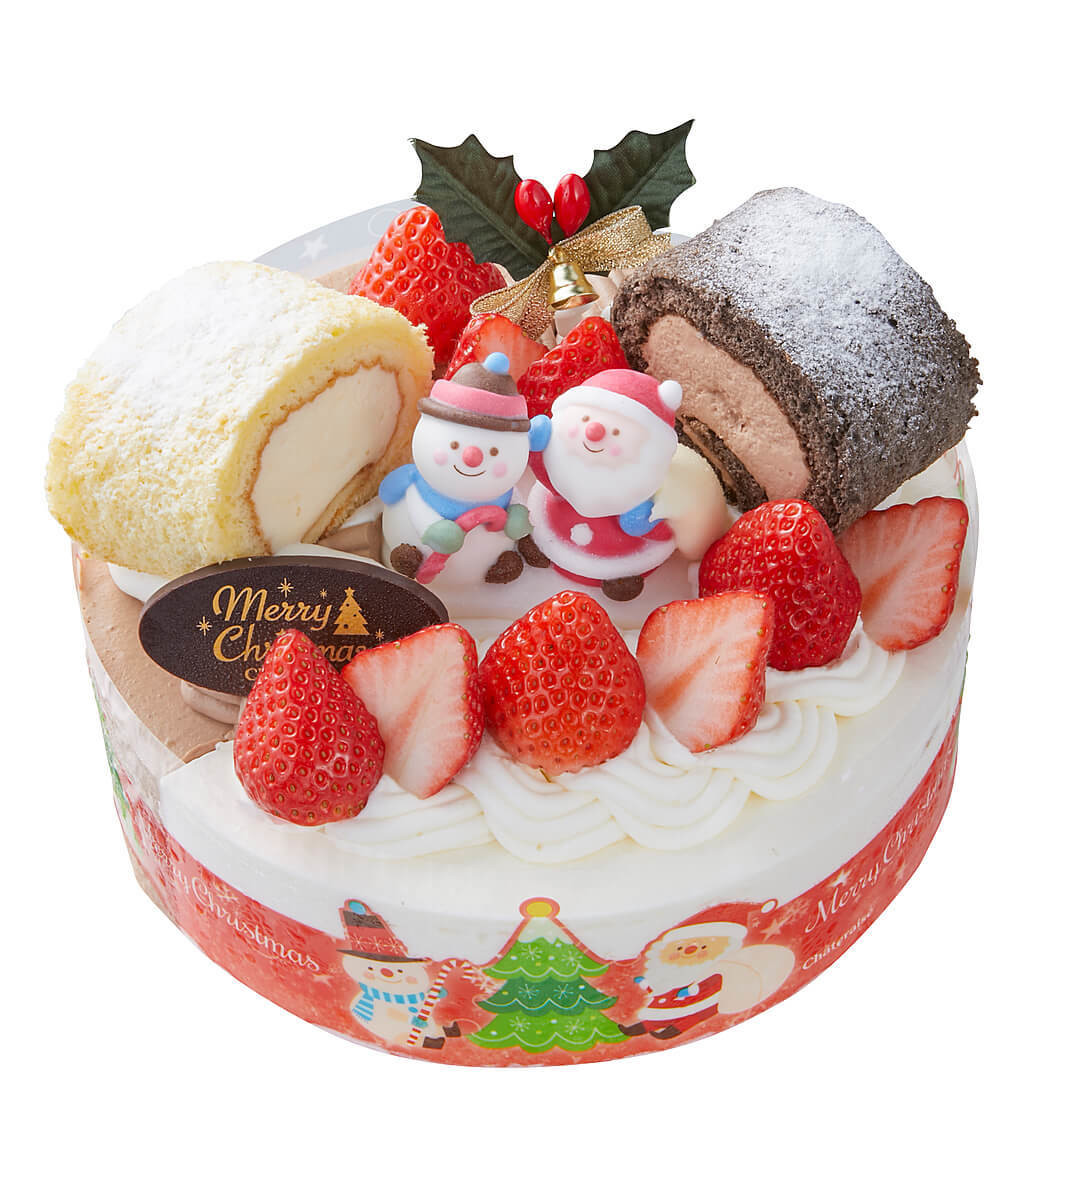 予約は16日まで シャトレーゼ クリスマスケーキランキング Best10を発表 アソートタイプが人気 ヨムーノ